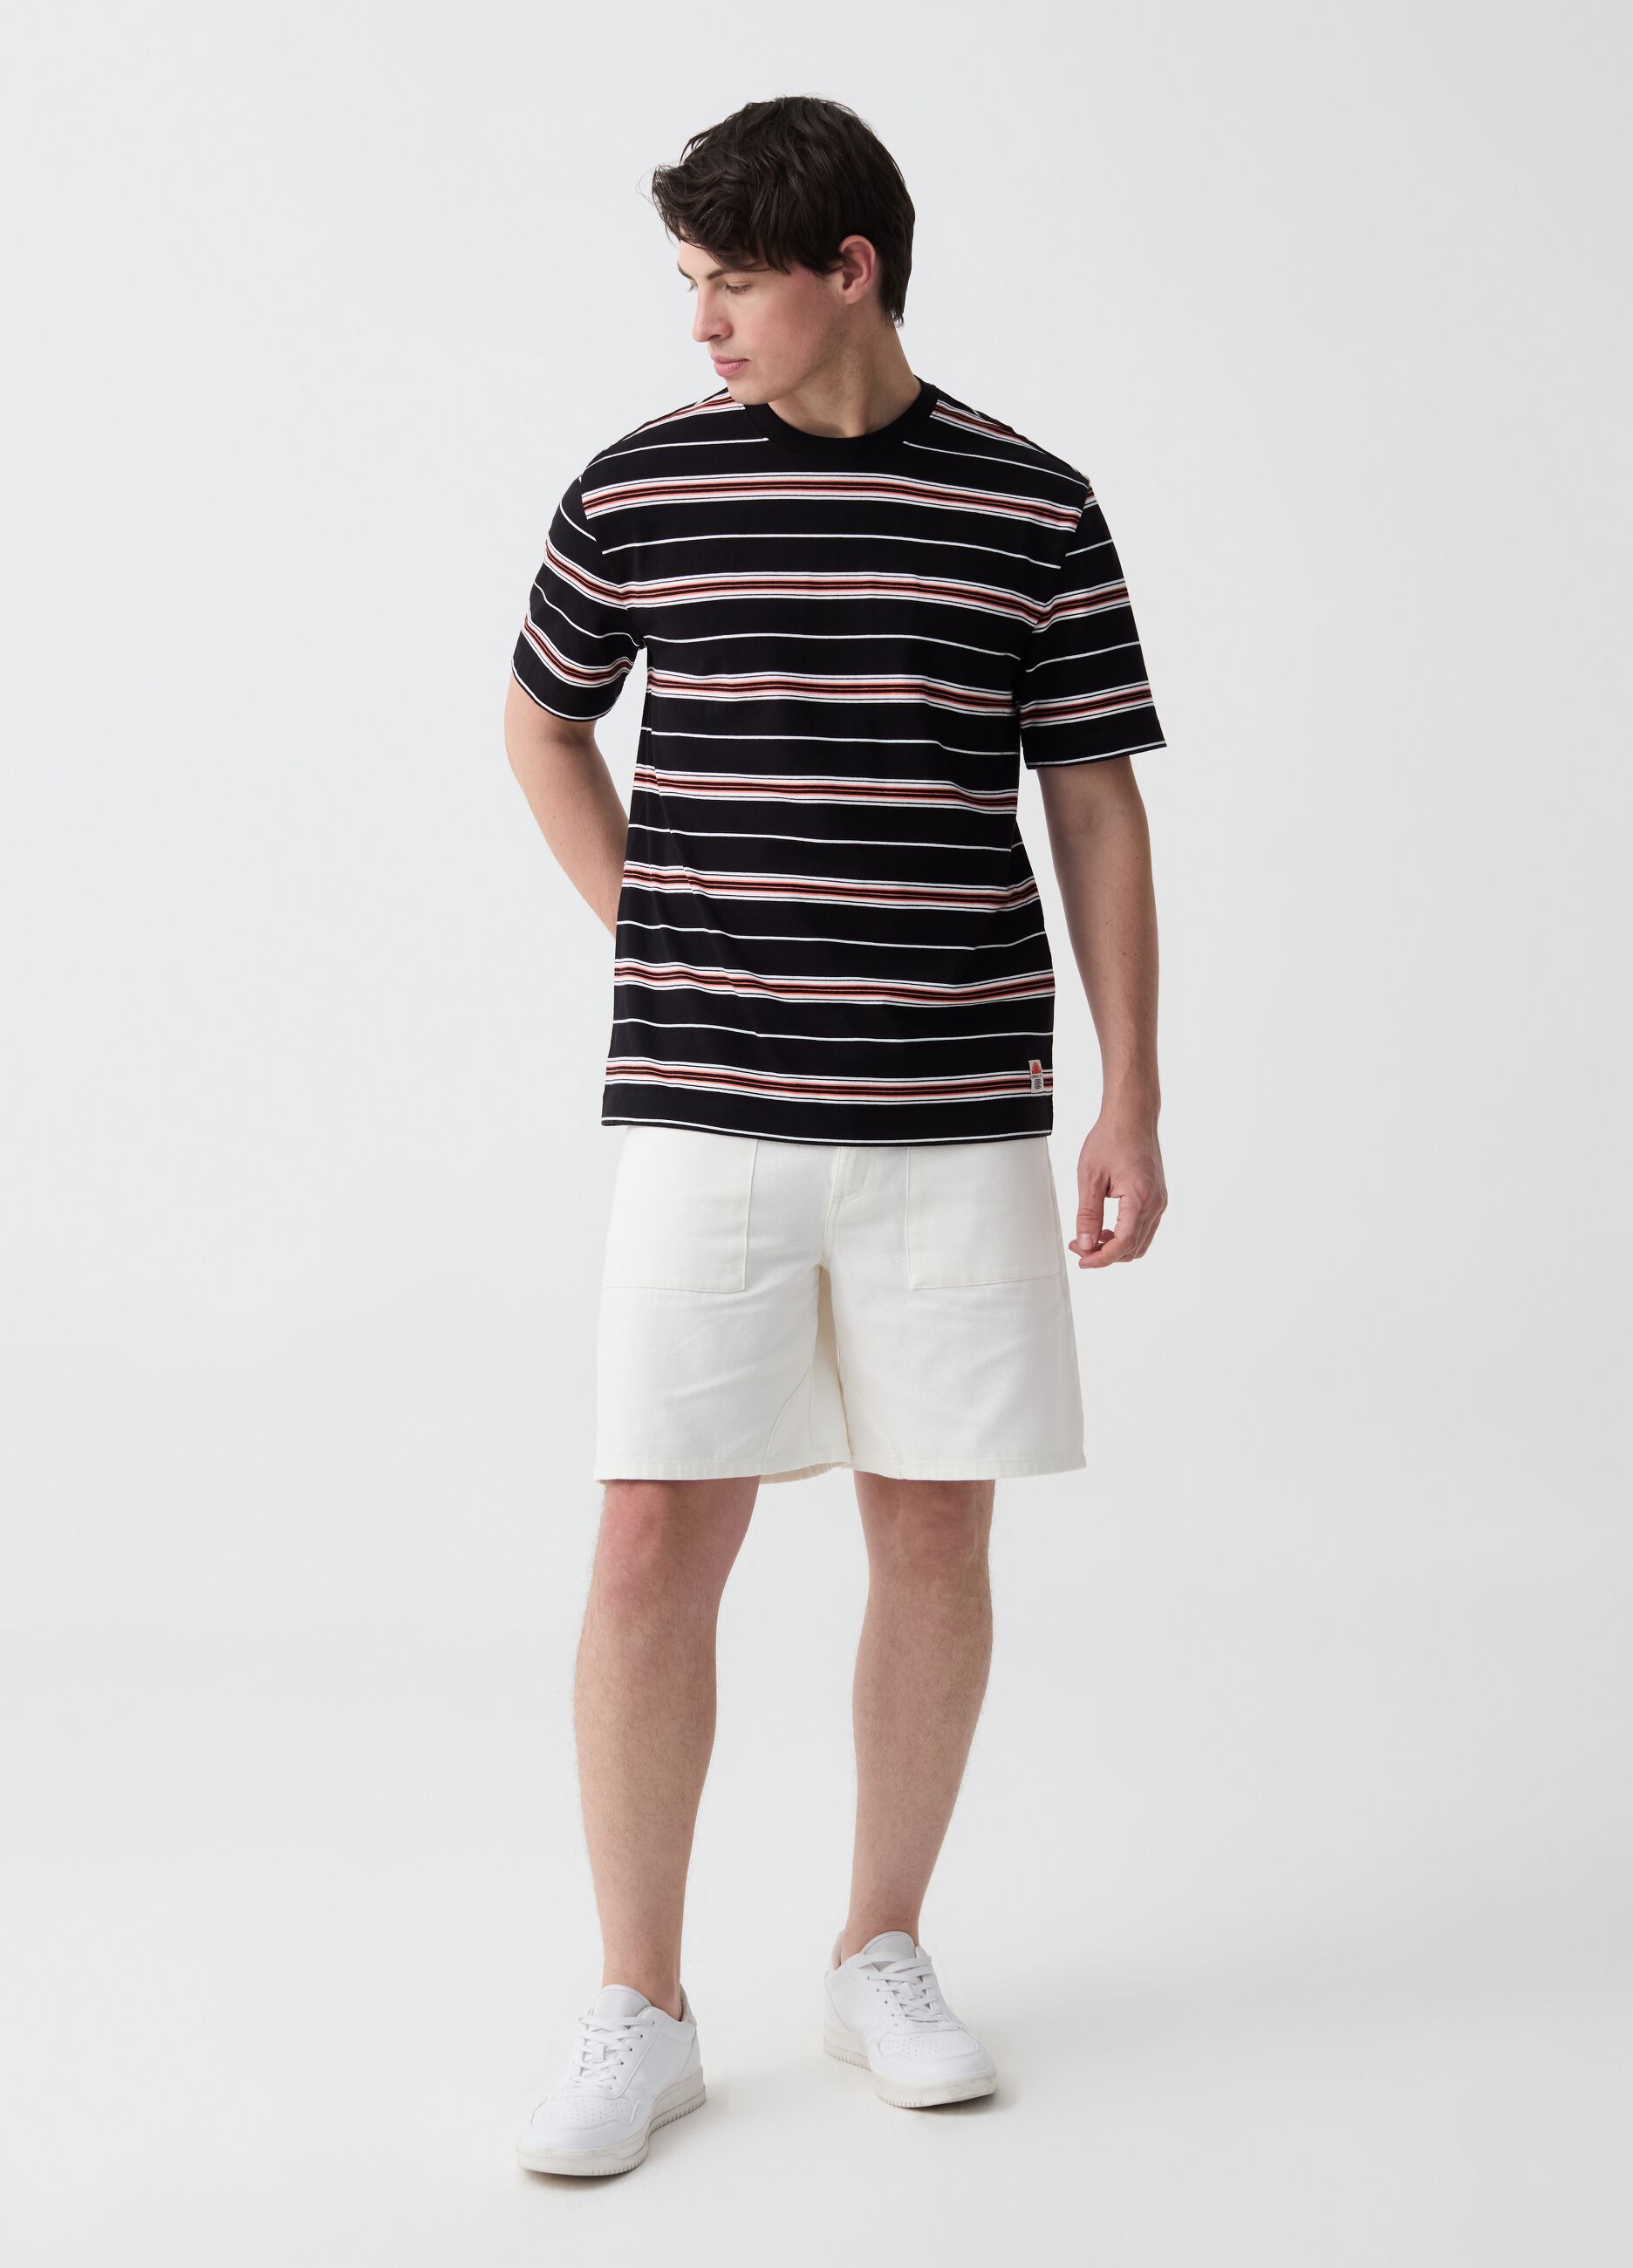 Stretch cotton dobby Bermuda shorts